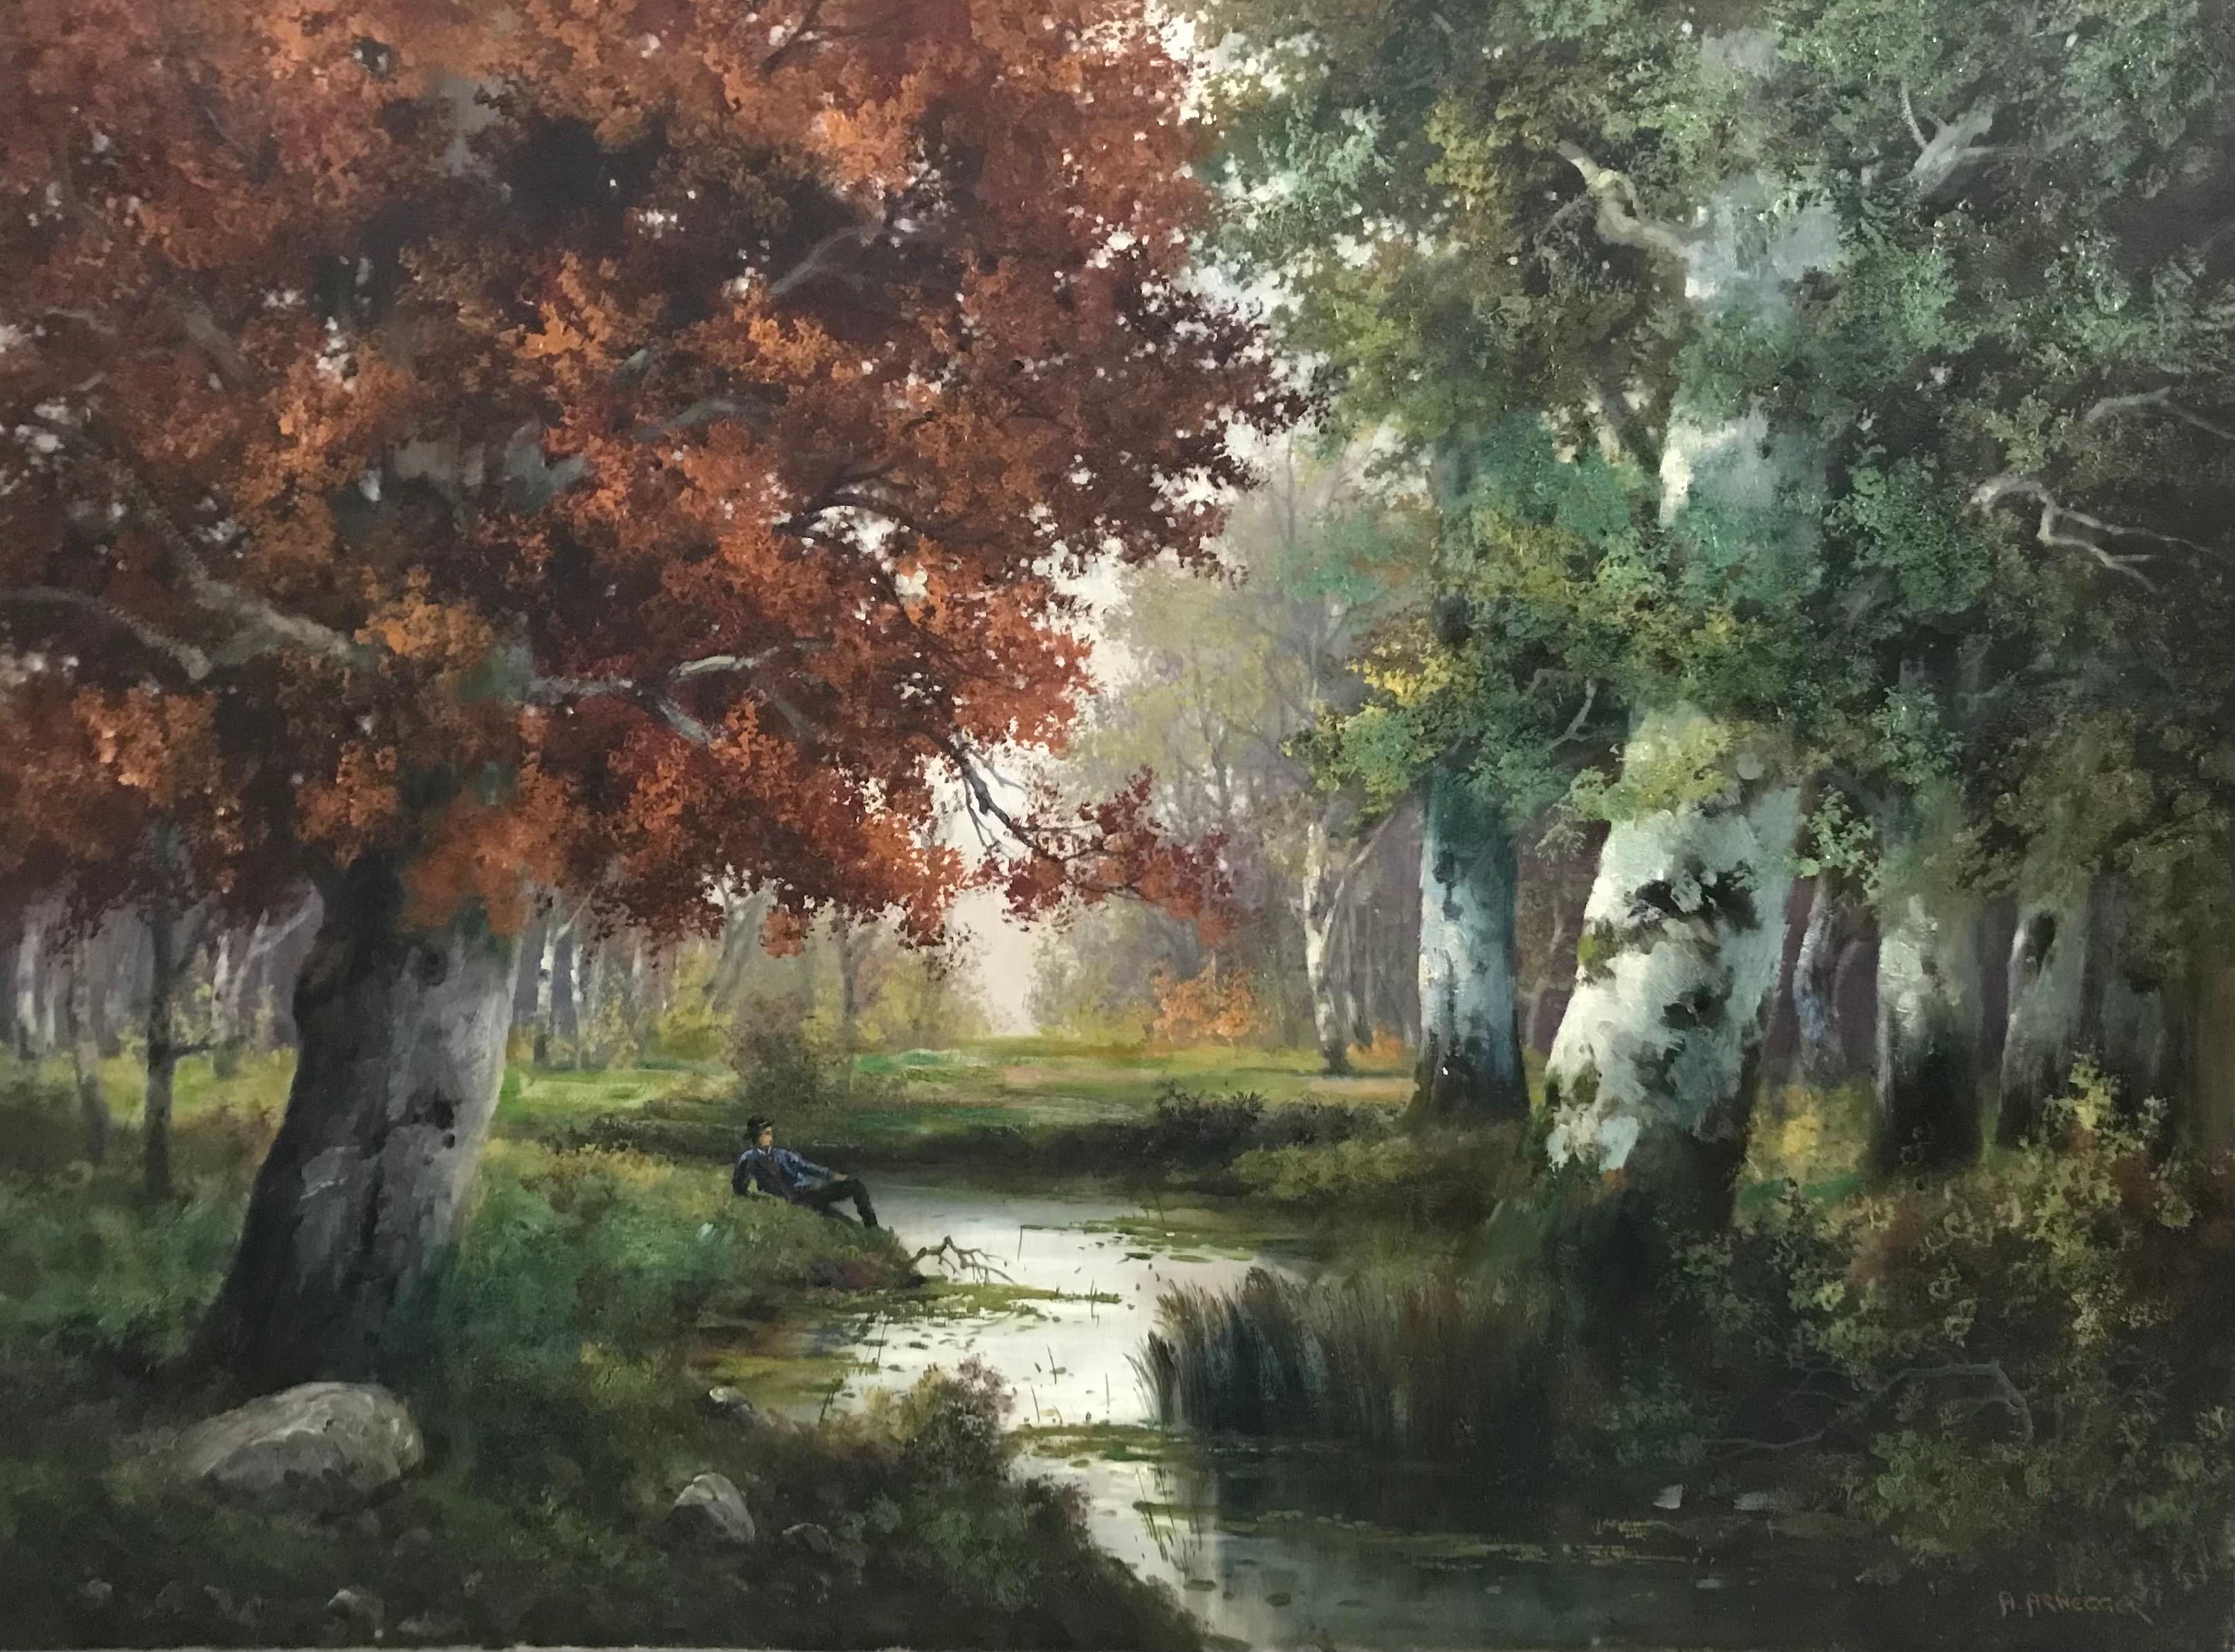 Alois Arnegger Landscape Painting - Repos dans le parc au bord de l'étang - Rest in the park by the pond